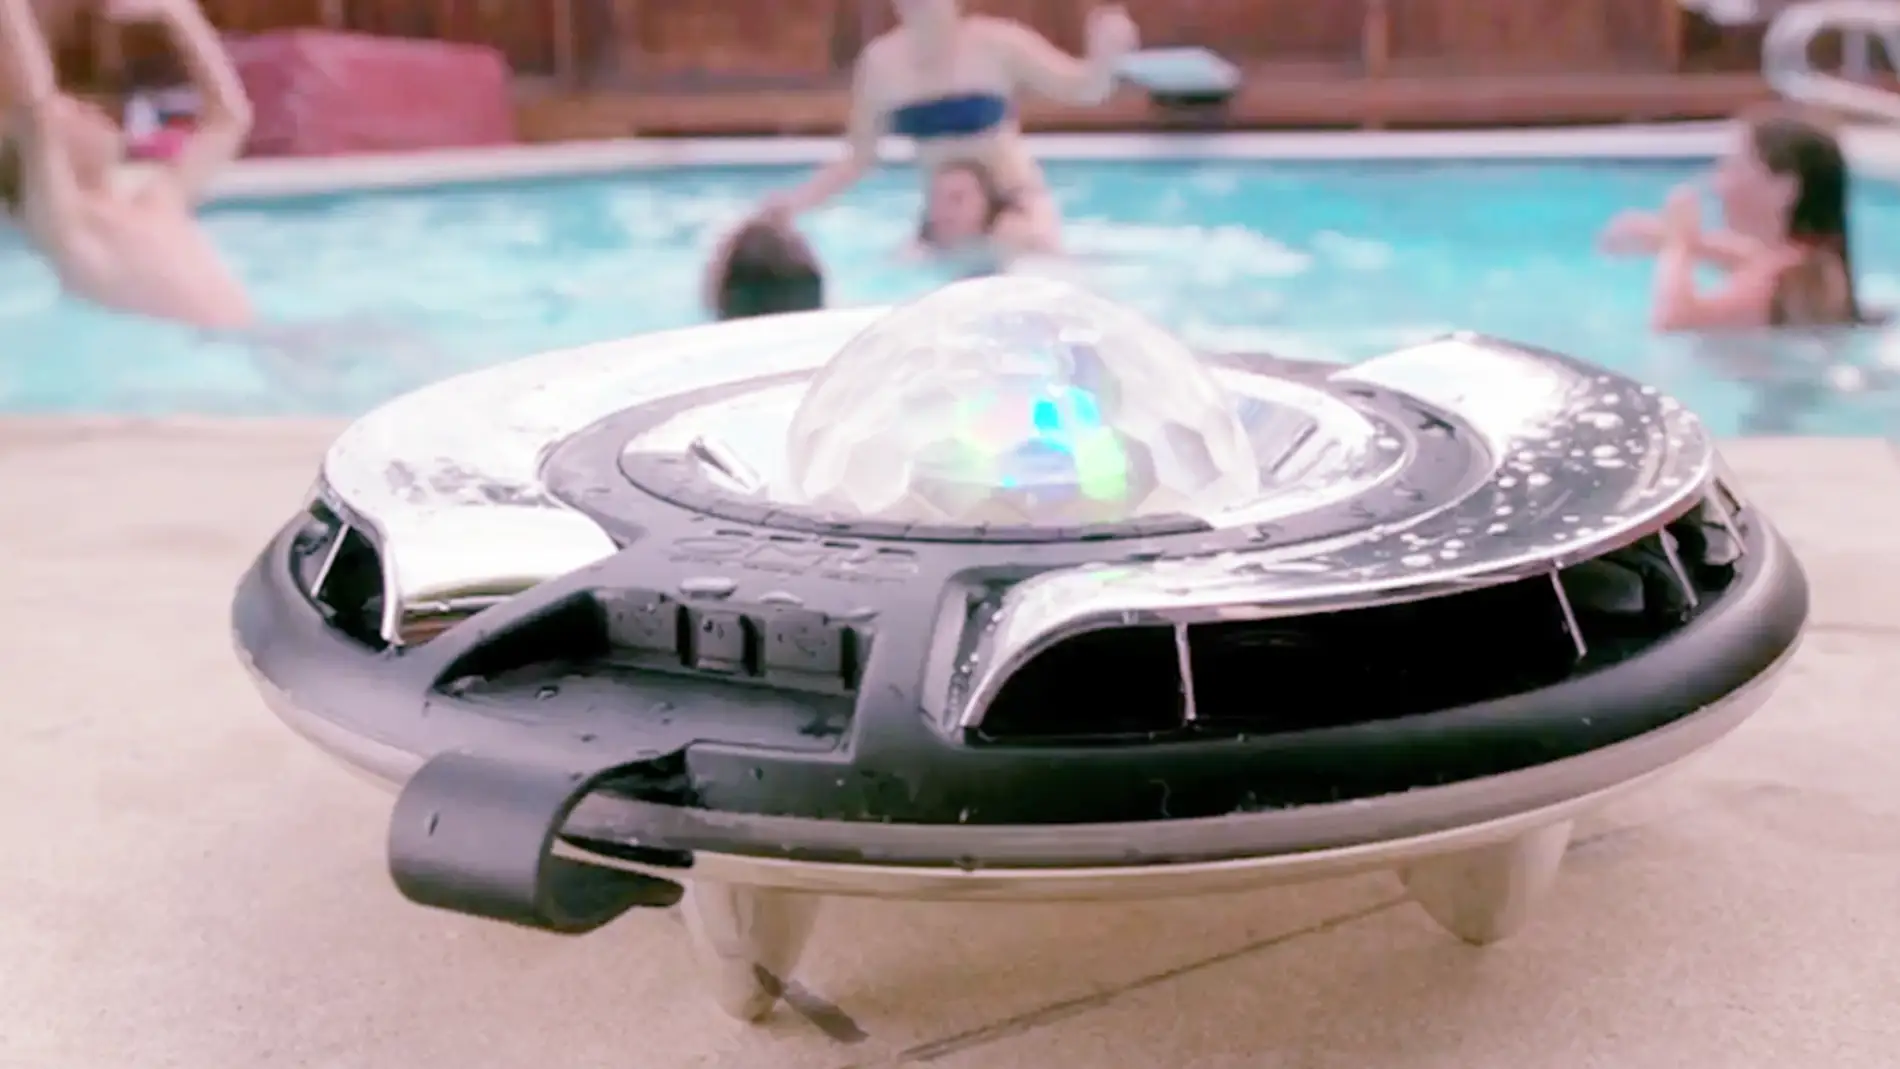 El objeto flotante no identificado para celebrar fiestas en tu piscina